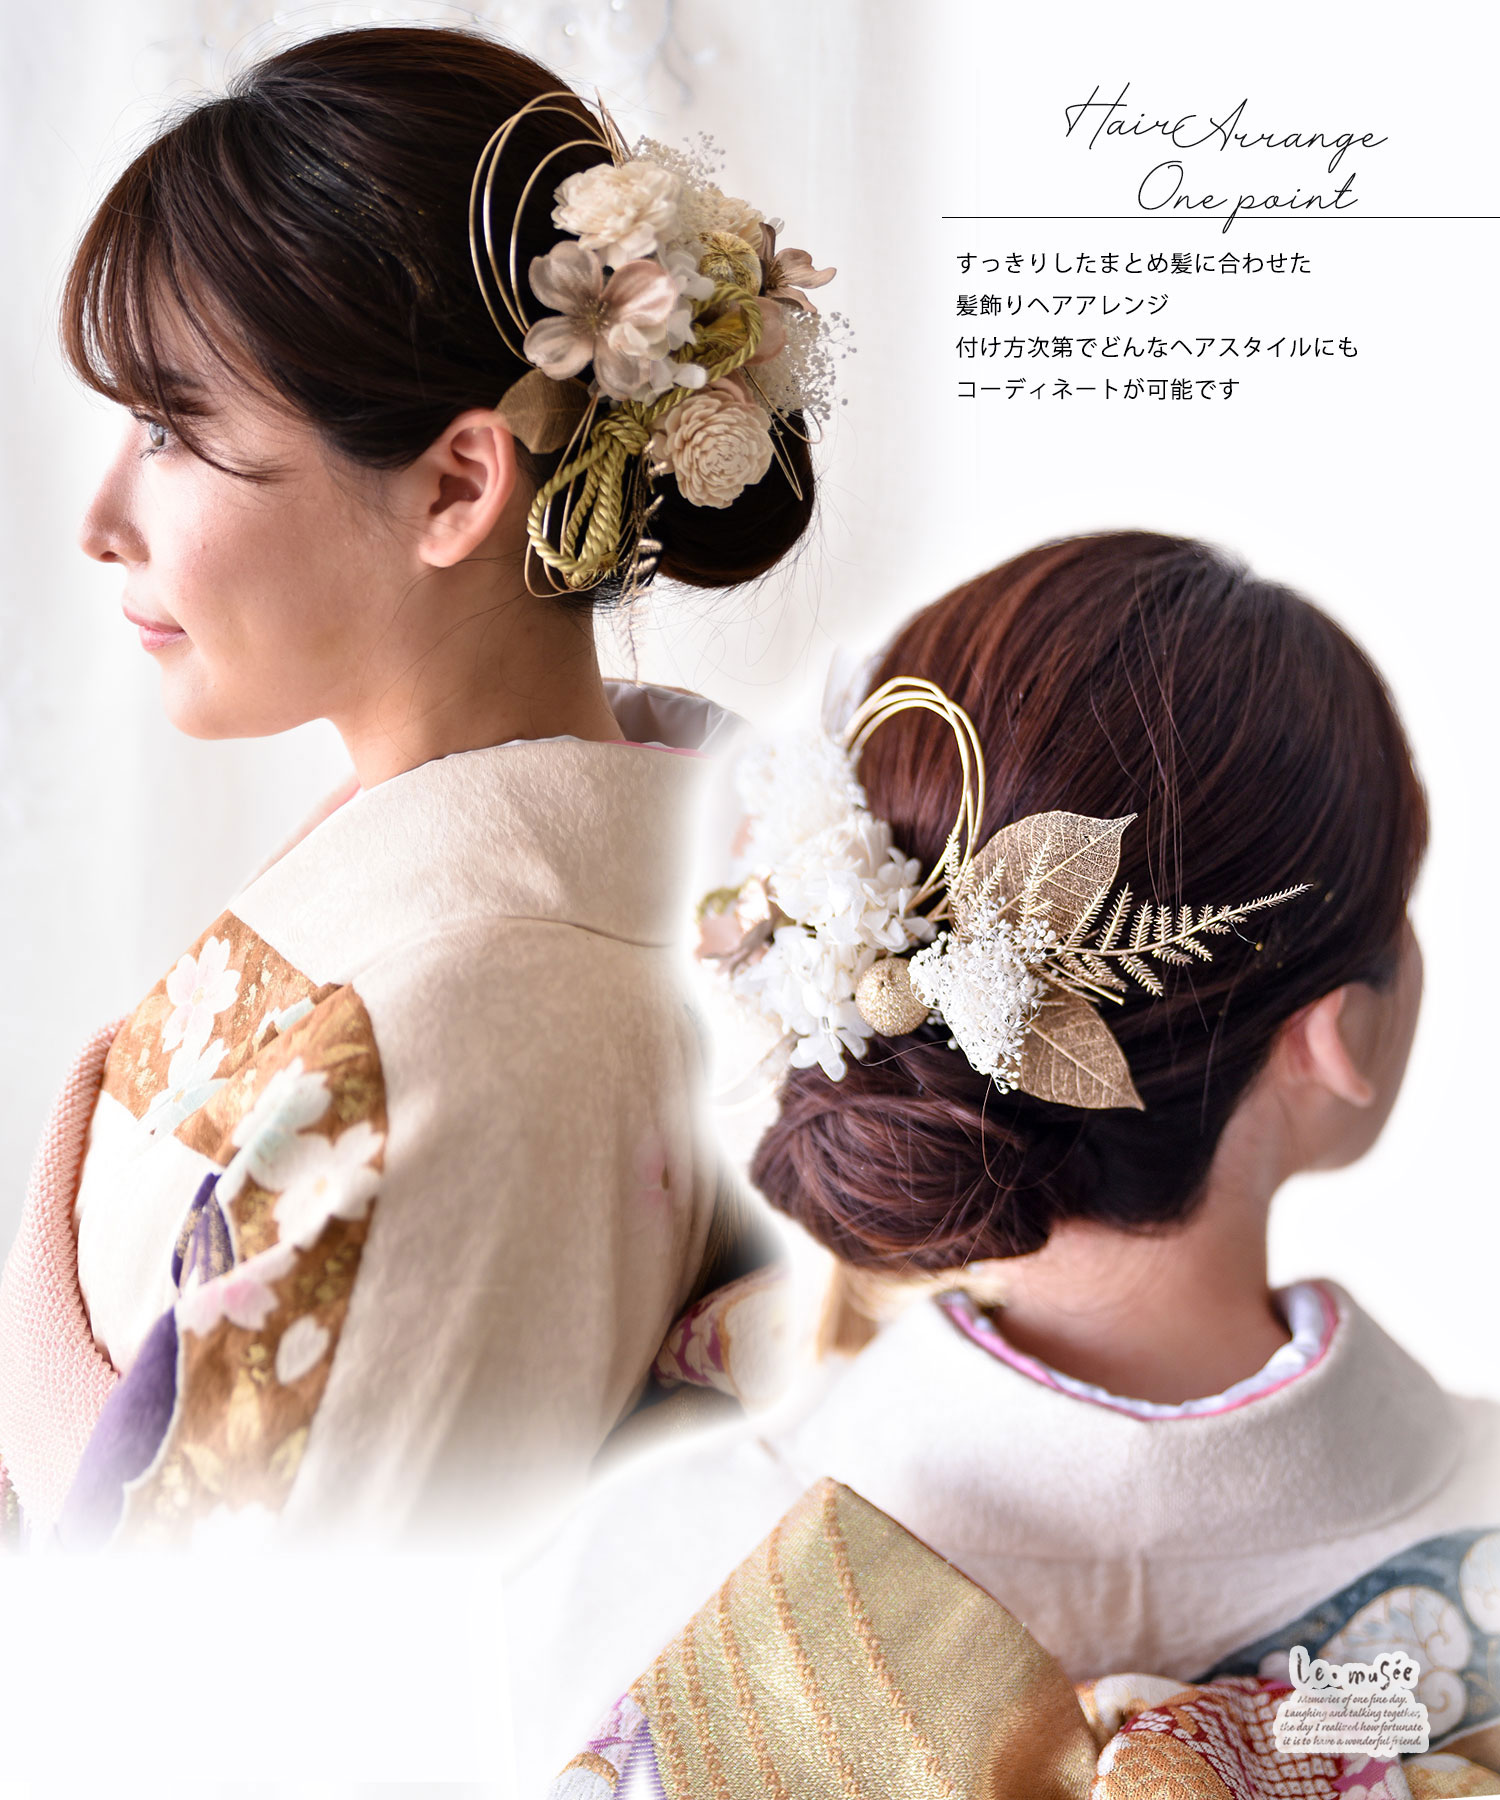 卒業式 袴 謝恩会 成人式 髪飾り 振袖 結婚式 和装 高級造花胡蝶蘭 水